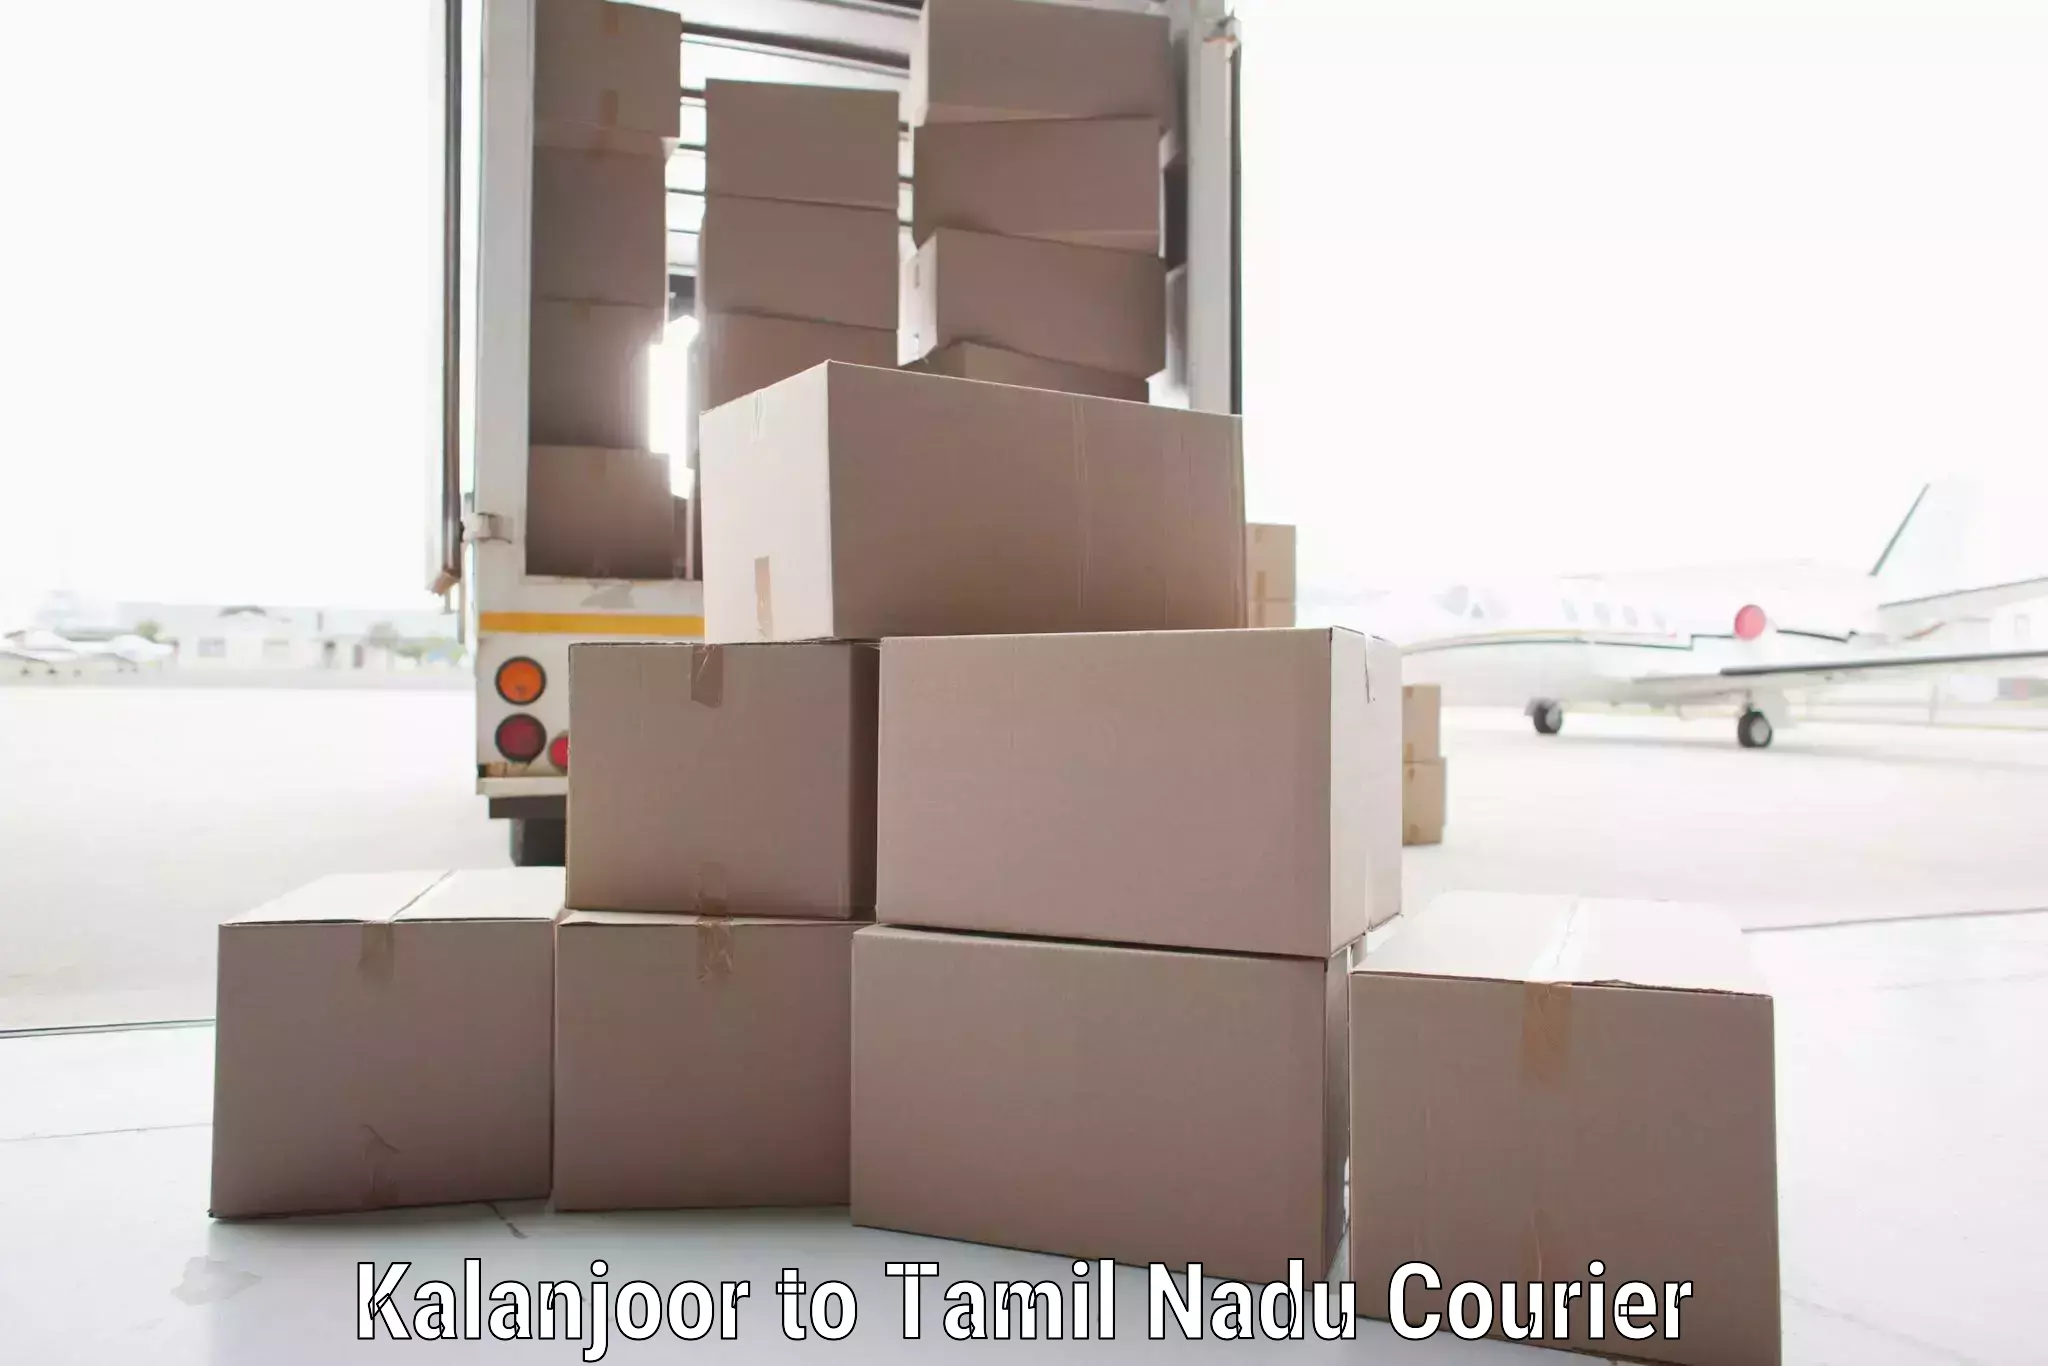 International logistics Kalanjoor to Kodaikanal